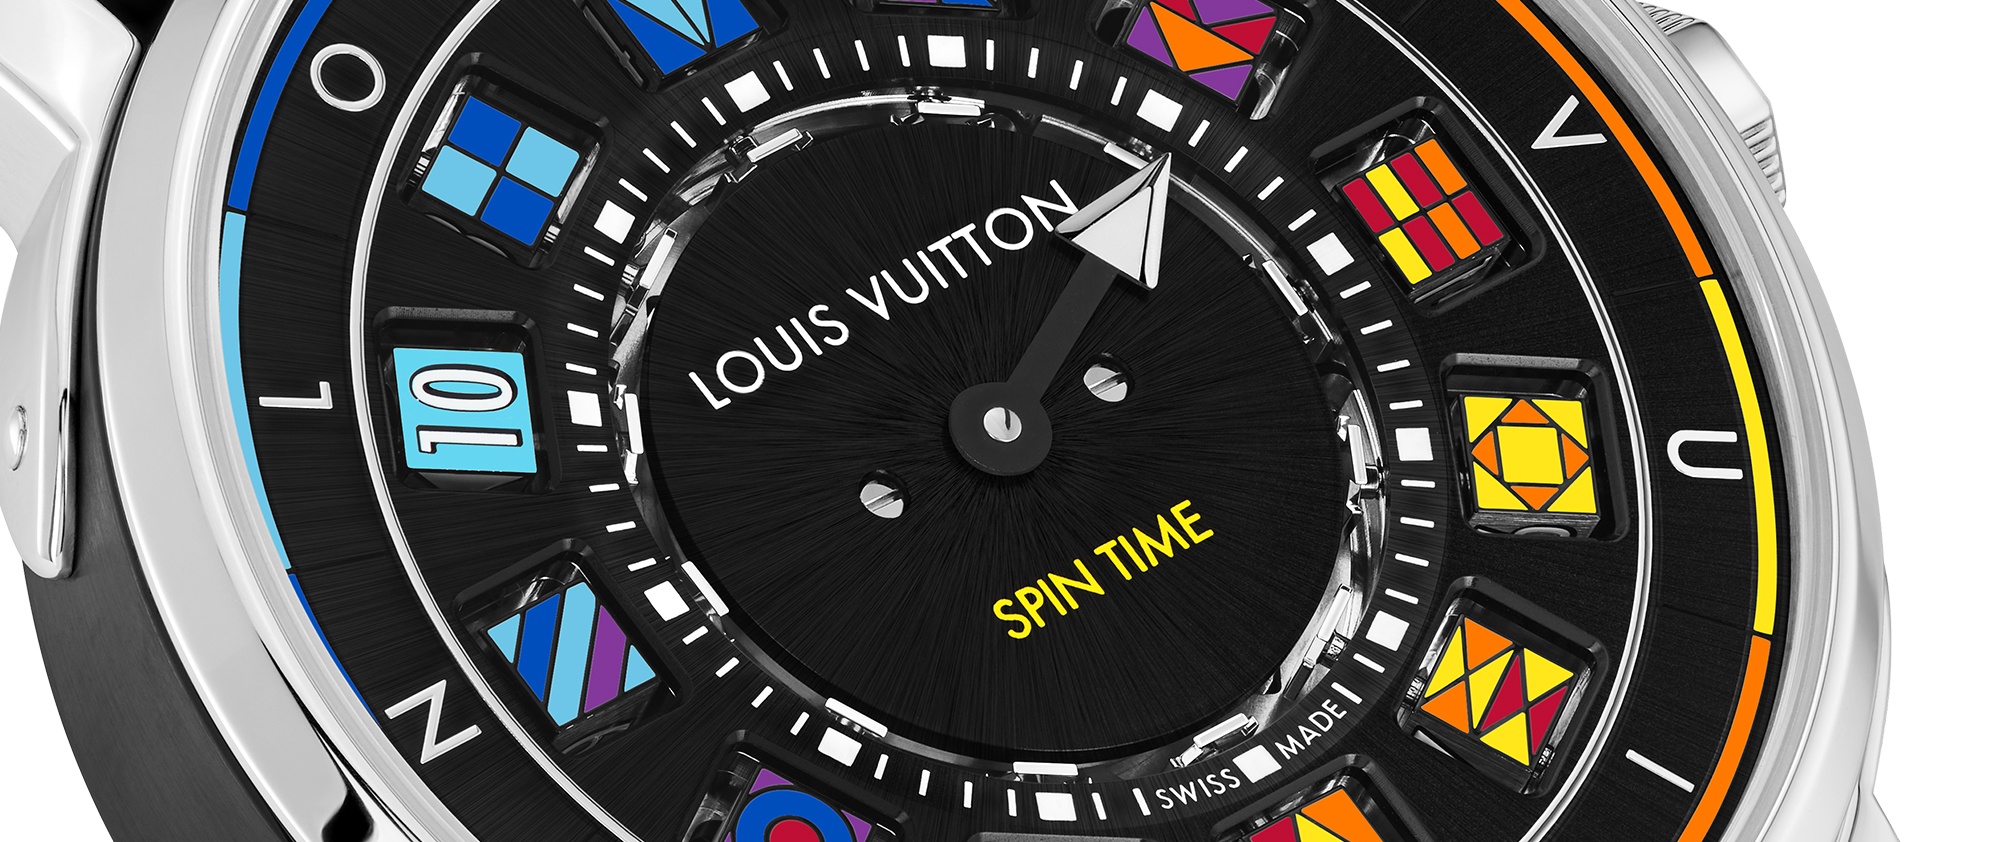 Louis Vuitton Escale Spin Time